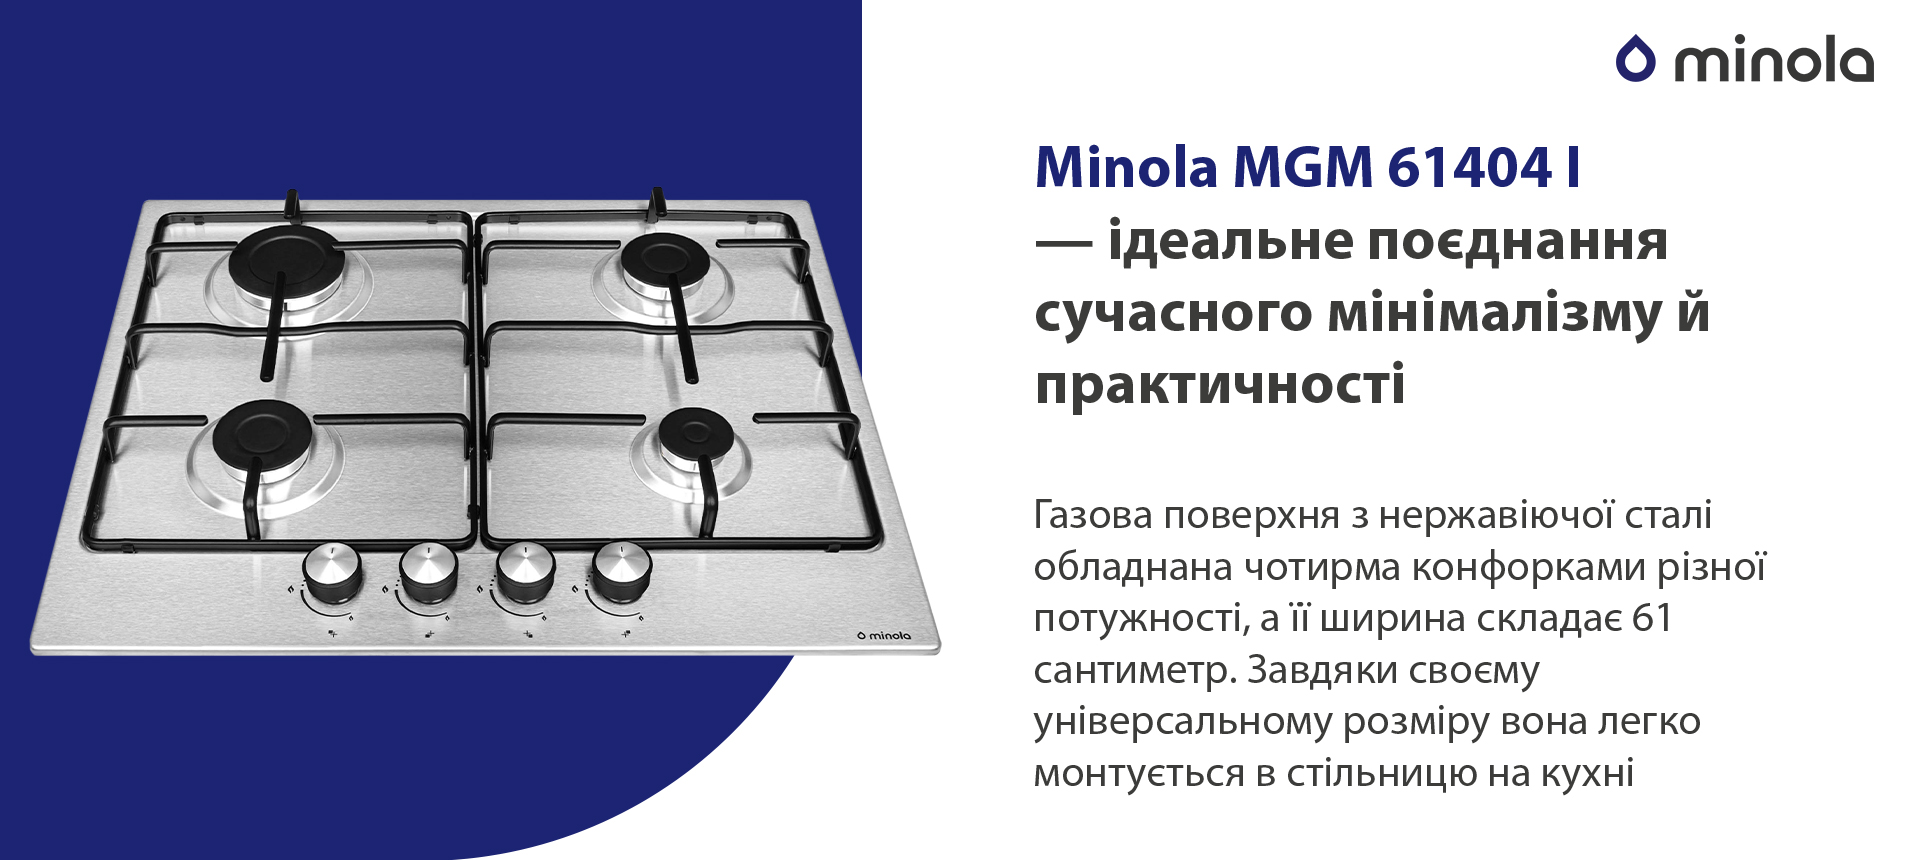 Minola MGM 61404 I в магазині в Києві - фото 10